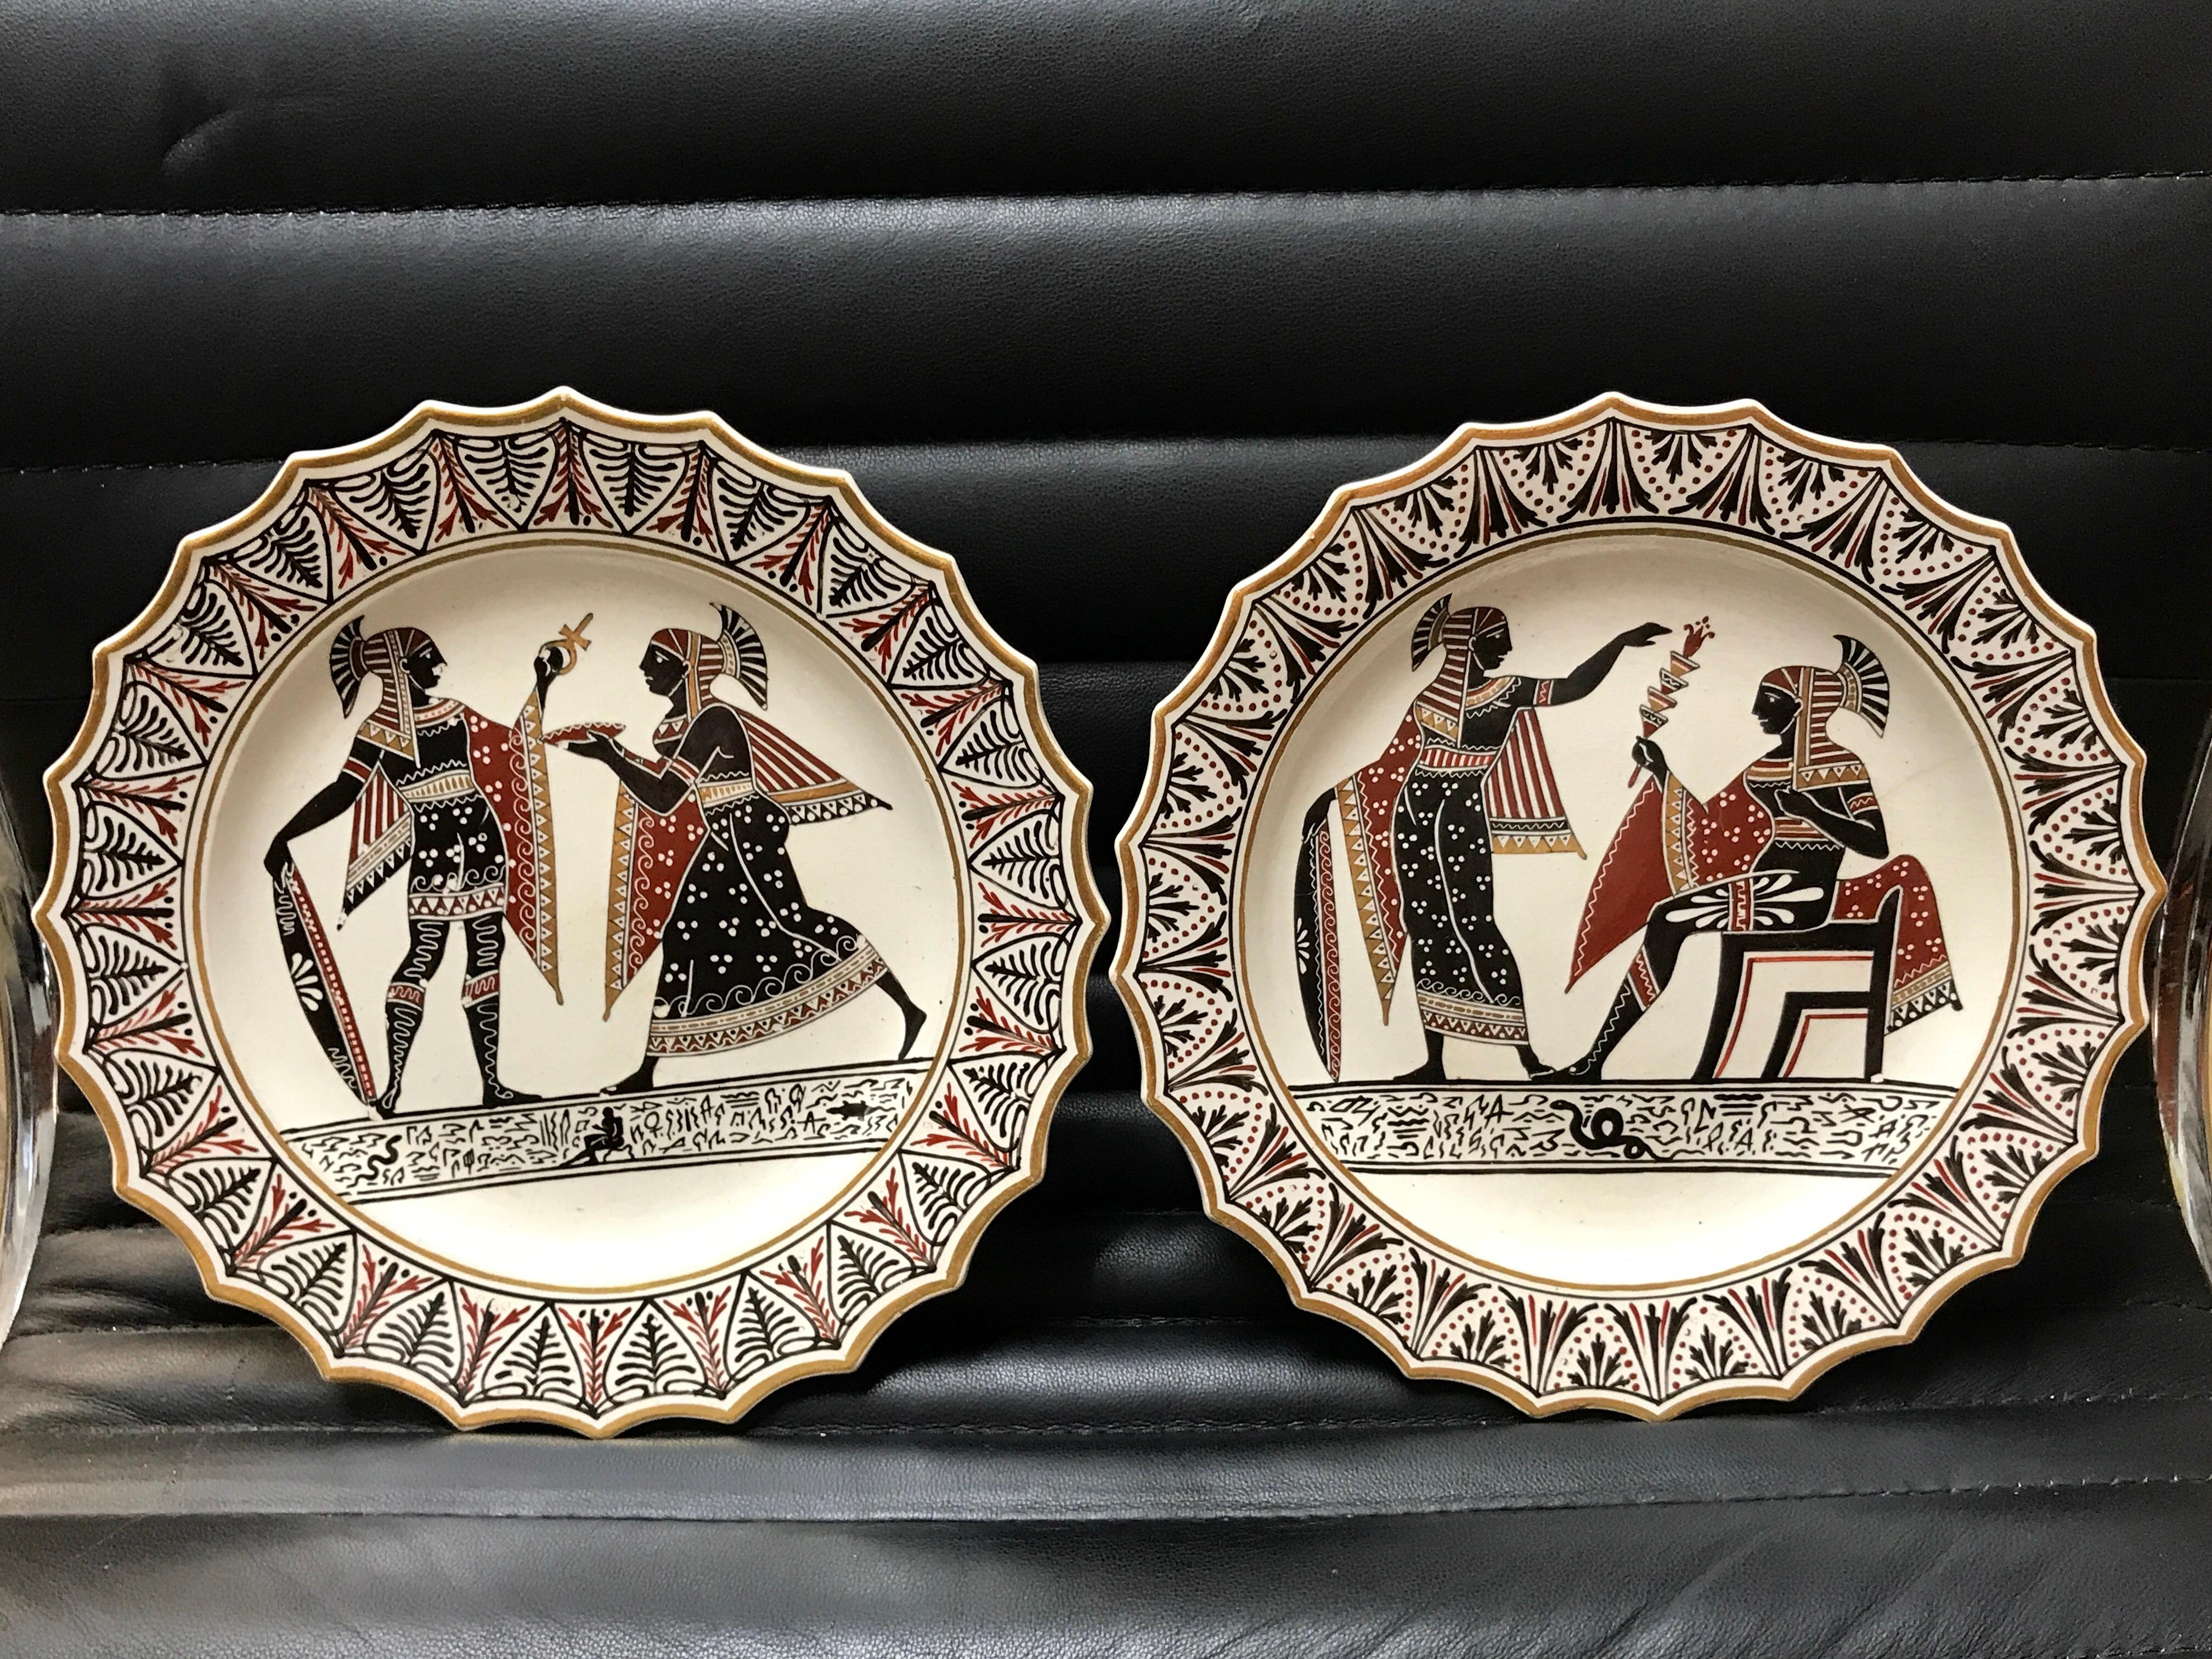 Ein Paar Giustiniani Egyptomania Keramikteller mit vergoldeten Rändern
19. Jahrhundert, eingeprägte Schrift Giustiniani und andere Zeichen.